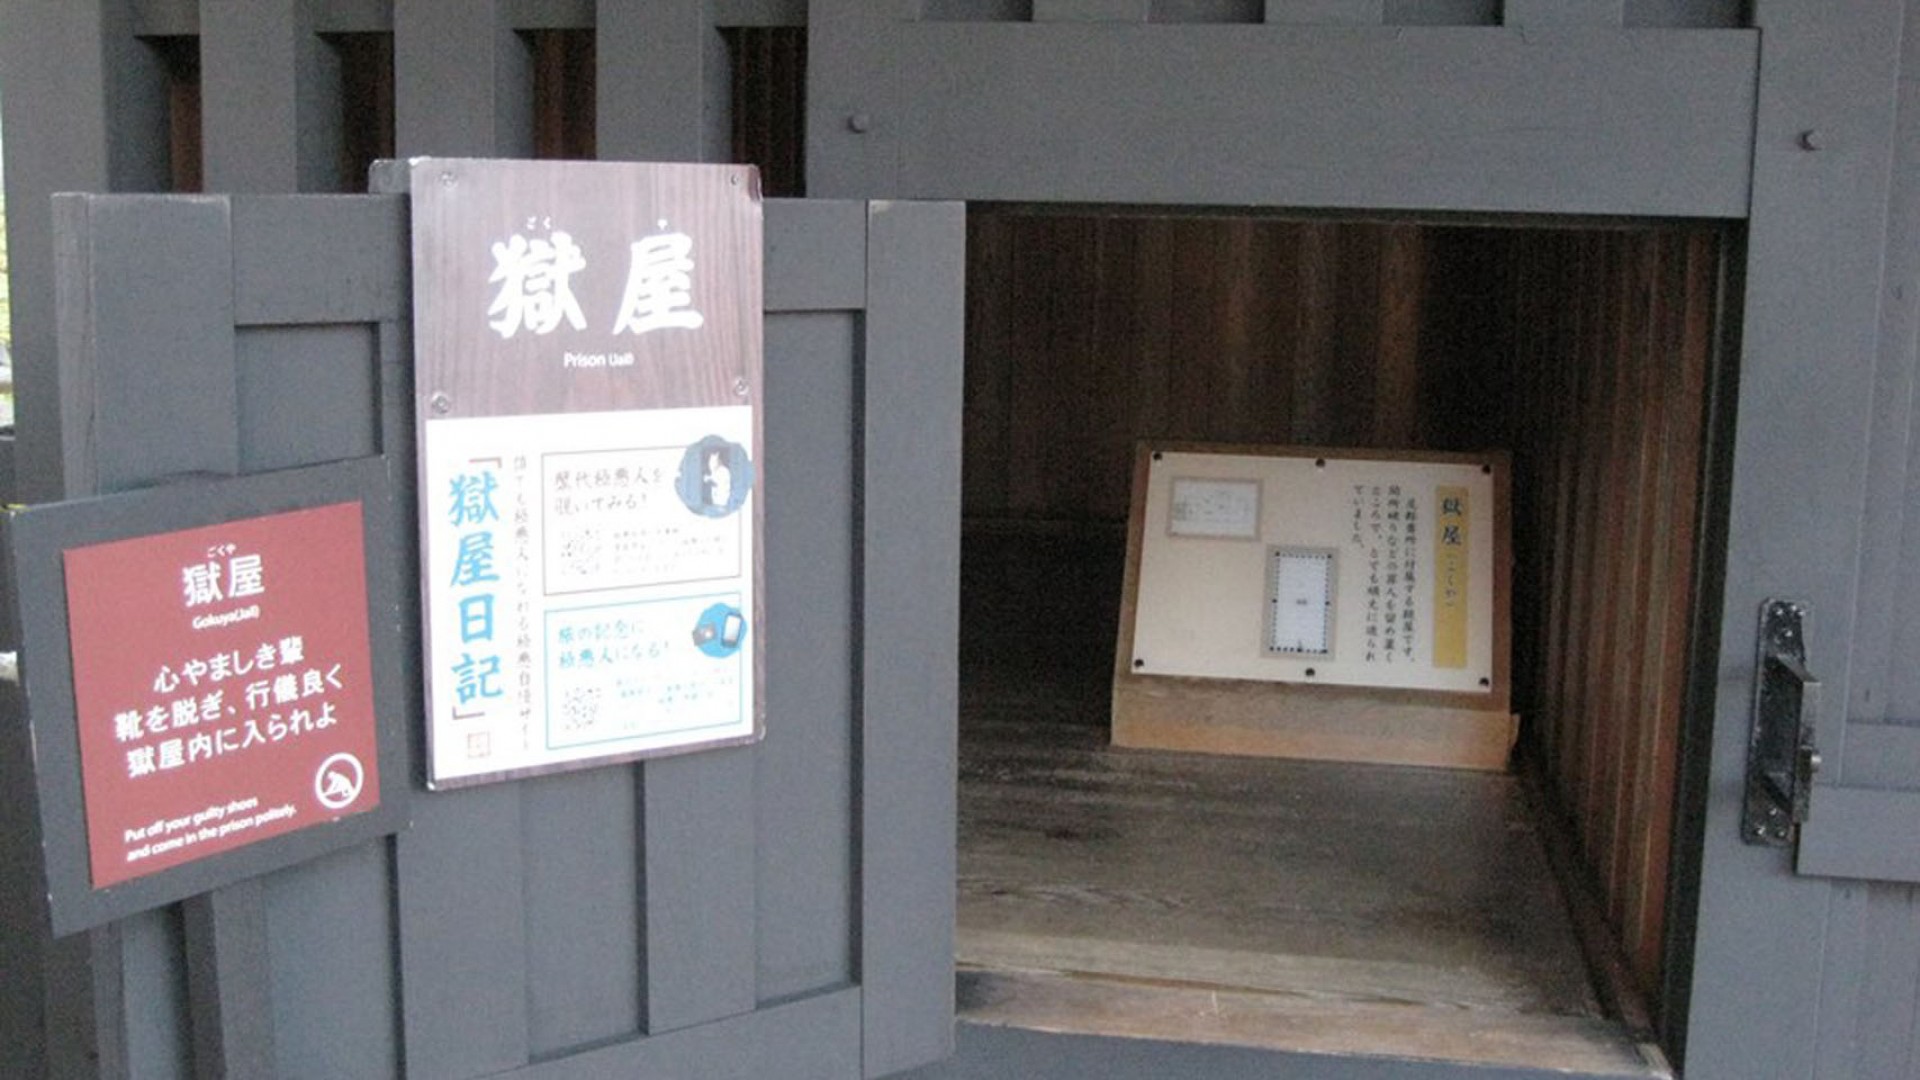 Hakone Sekisho Museum